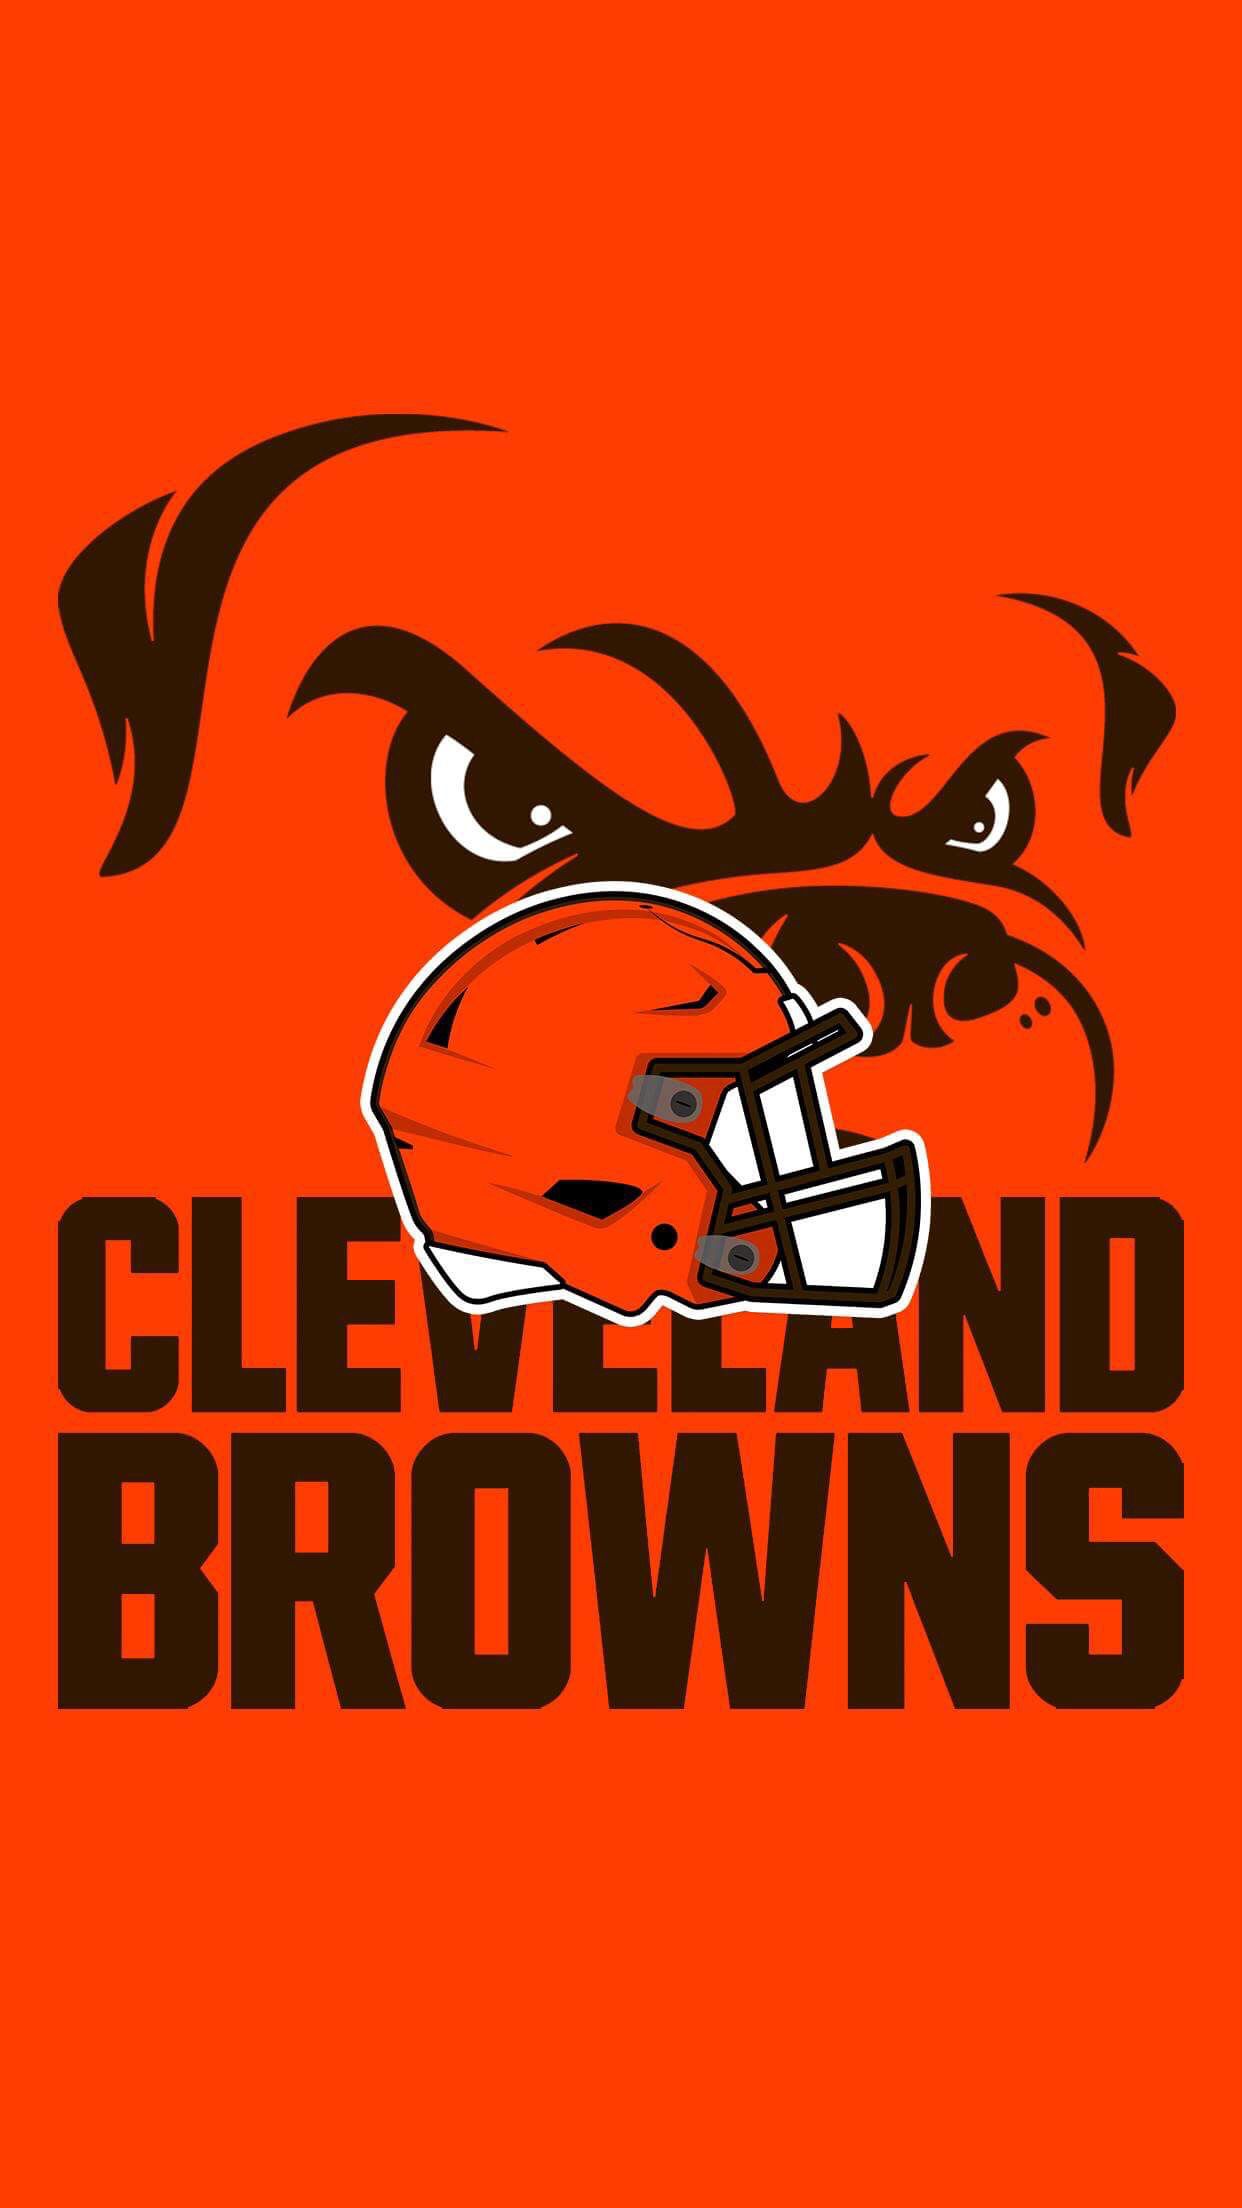 Cleveland Browns Wallpaper Fan Art NFL Helmet. Cleveland browns wallpaper, Cleveland browns logo, Cleveland browns football